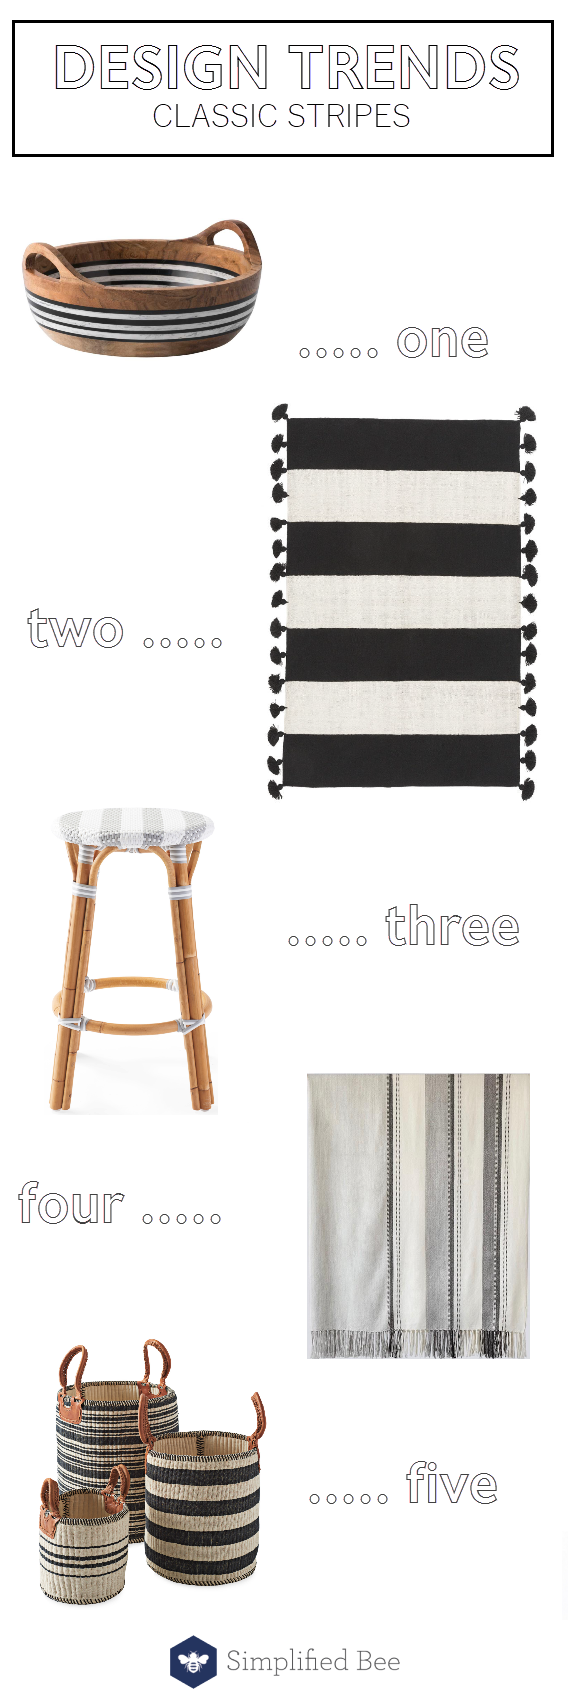 design trends // classic stripe patterns #stripes